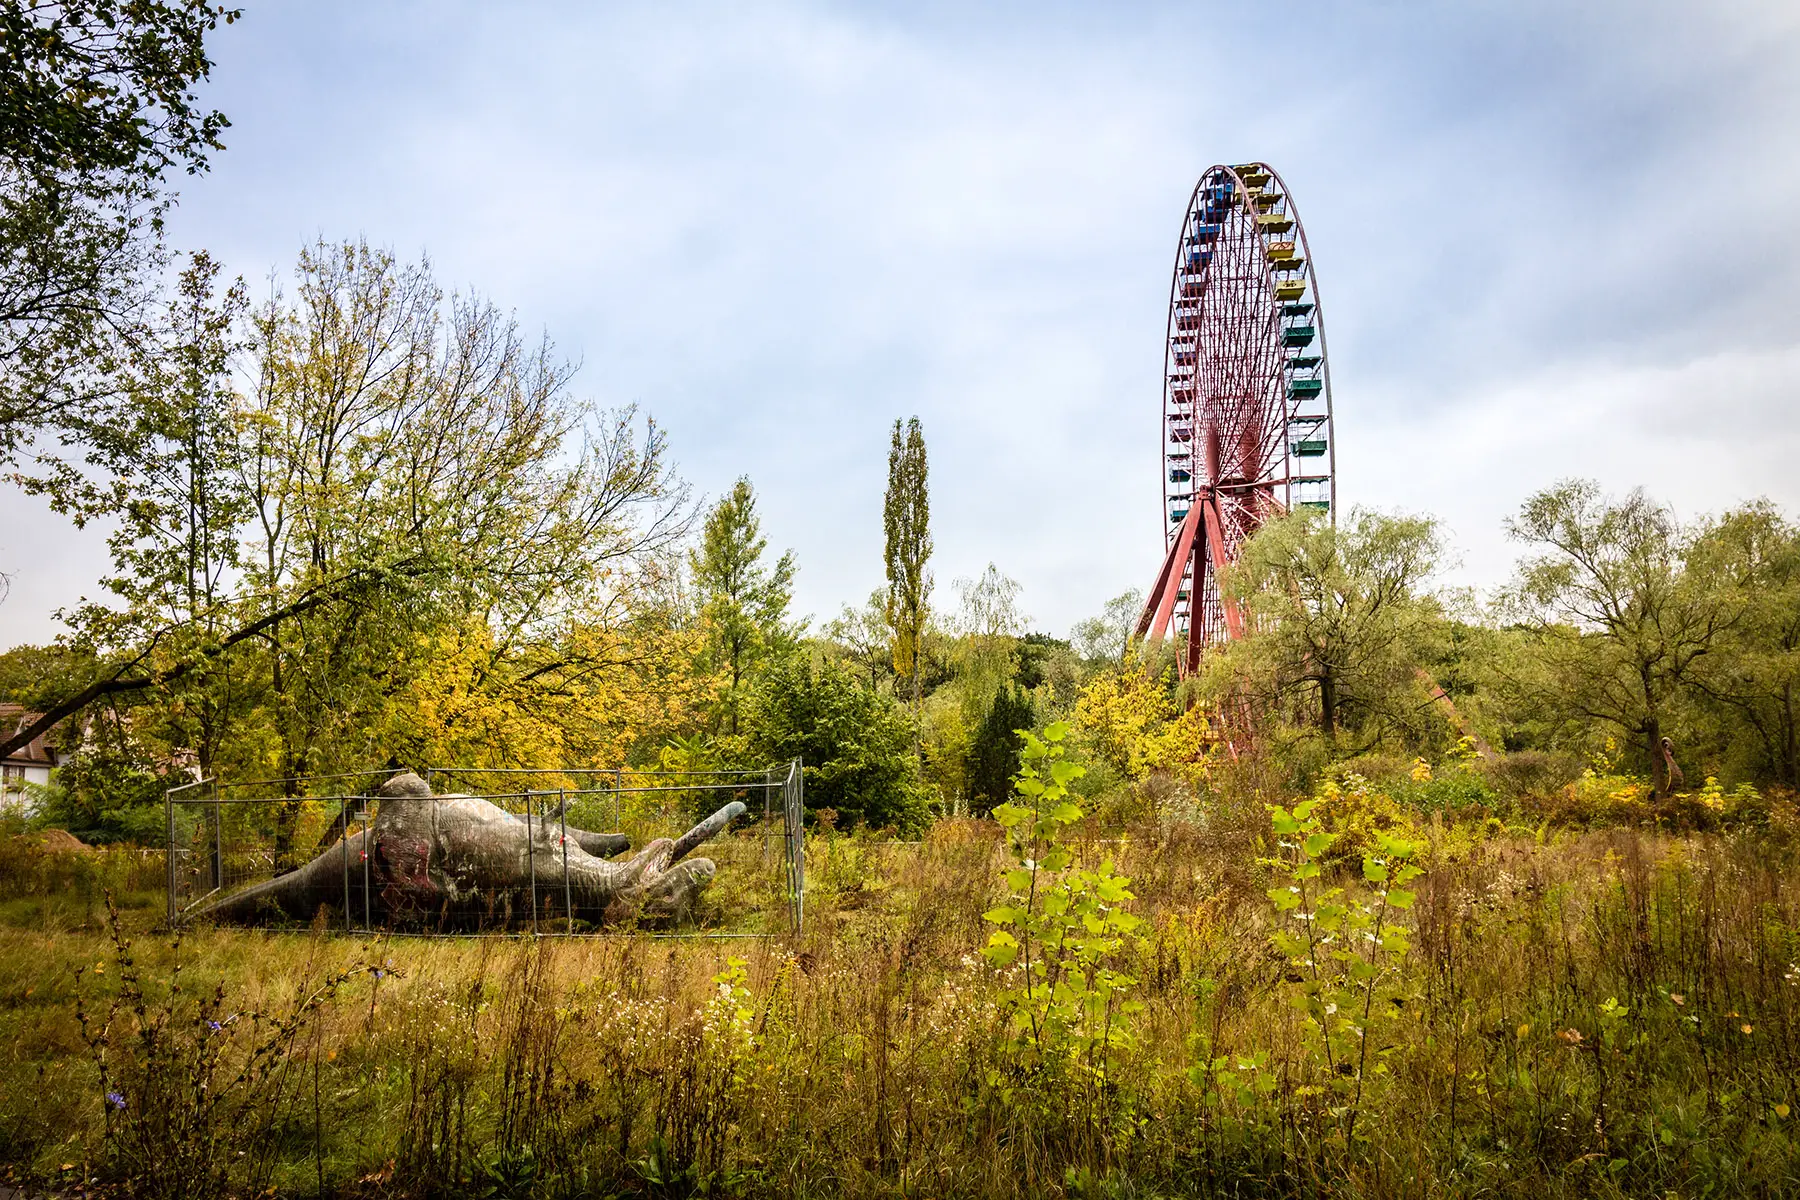 Abandoned Ferris wheel at Spreepark in Berlin